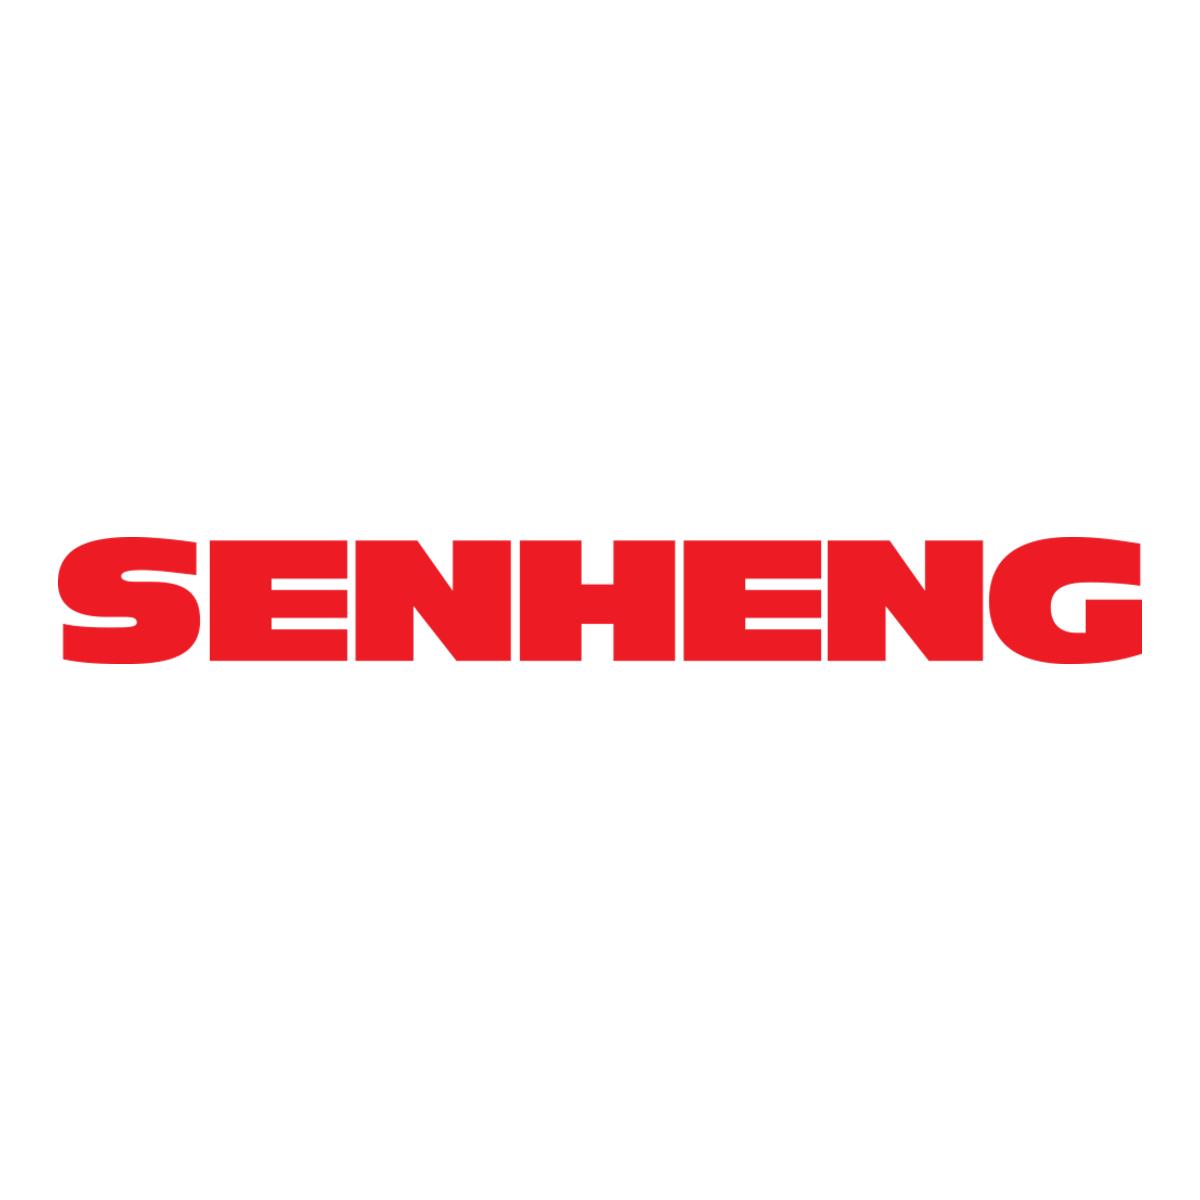 senheng_square